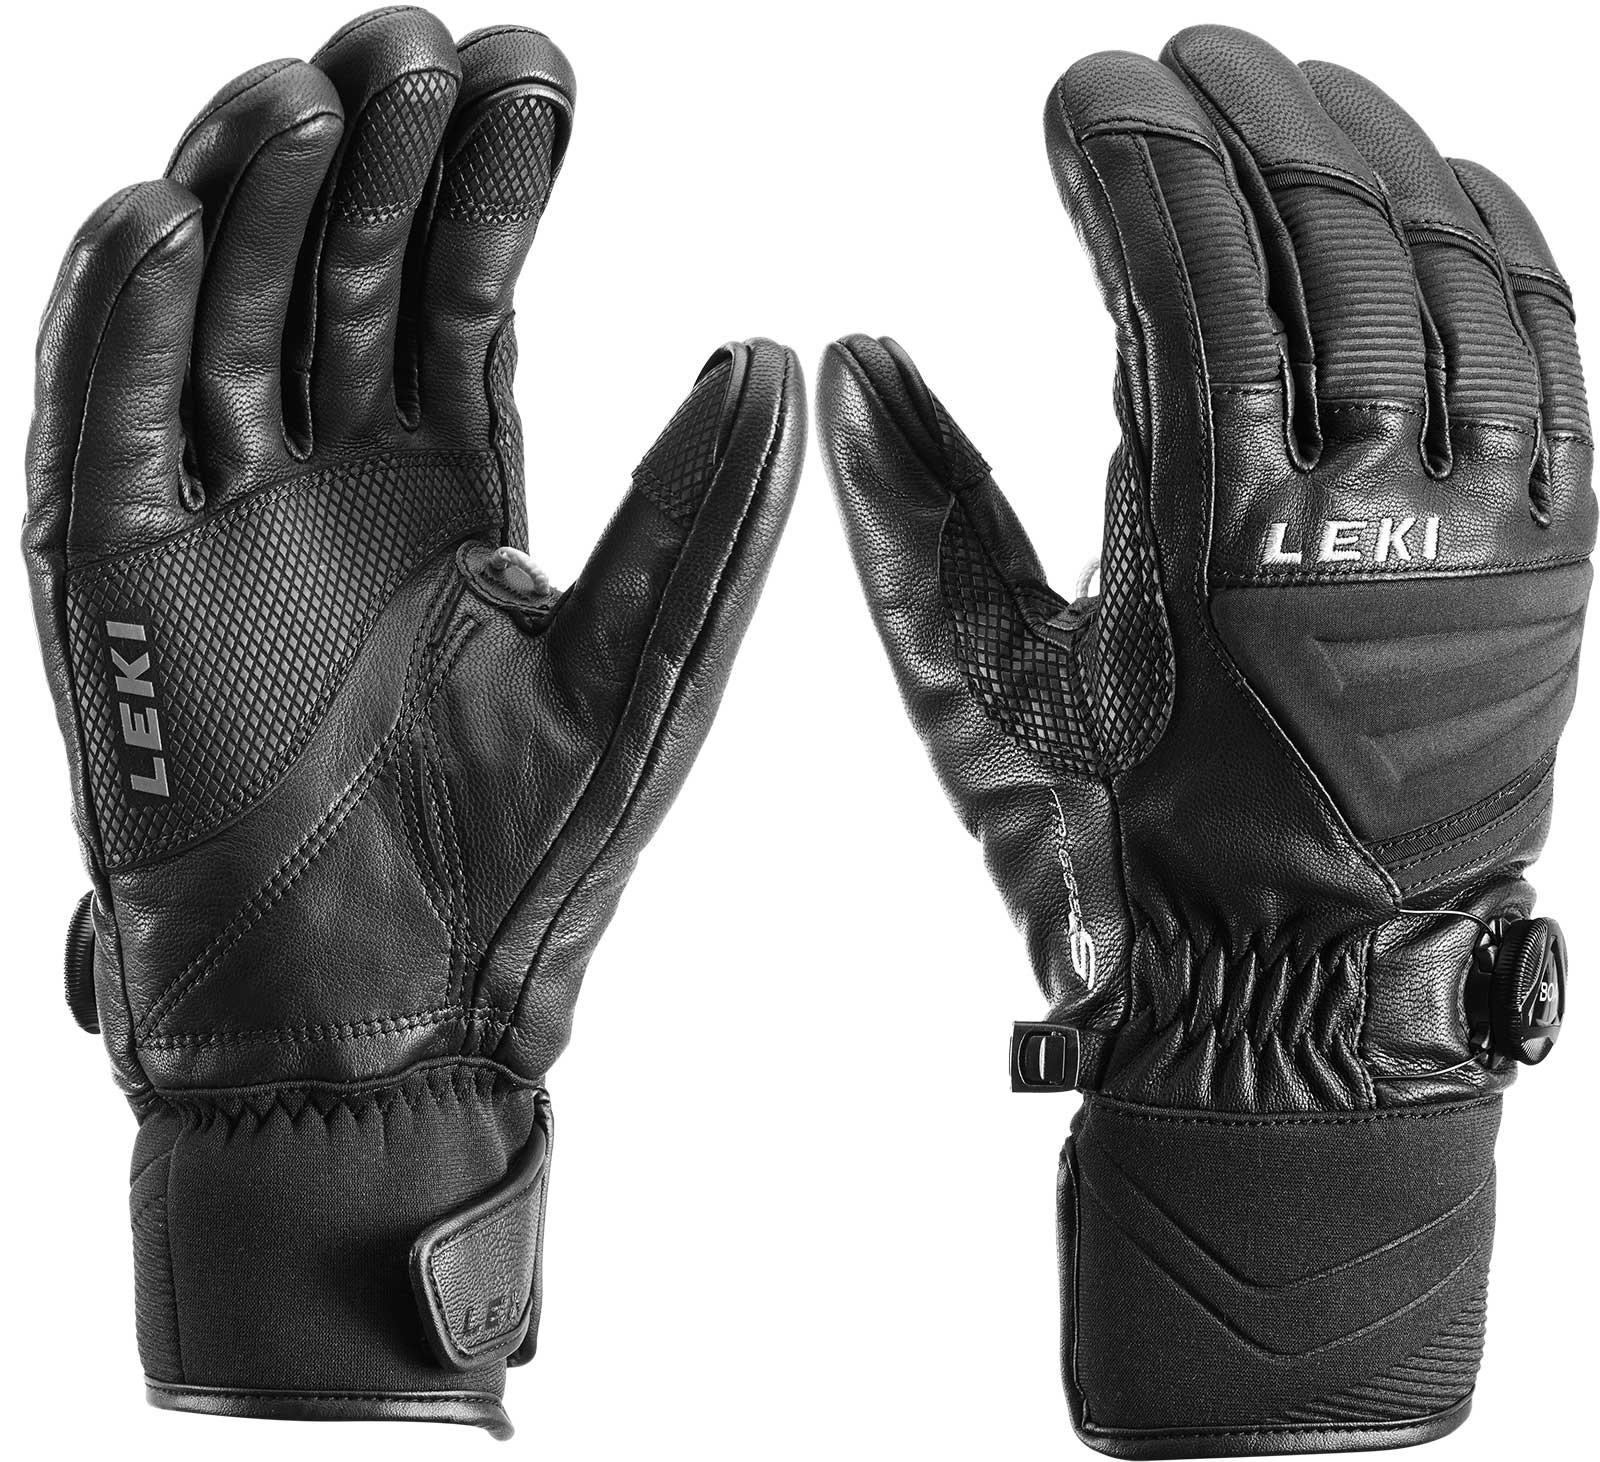 Progressive Tune Boa mens skis gloves - 8,0 LEKI black 